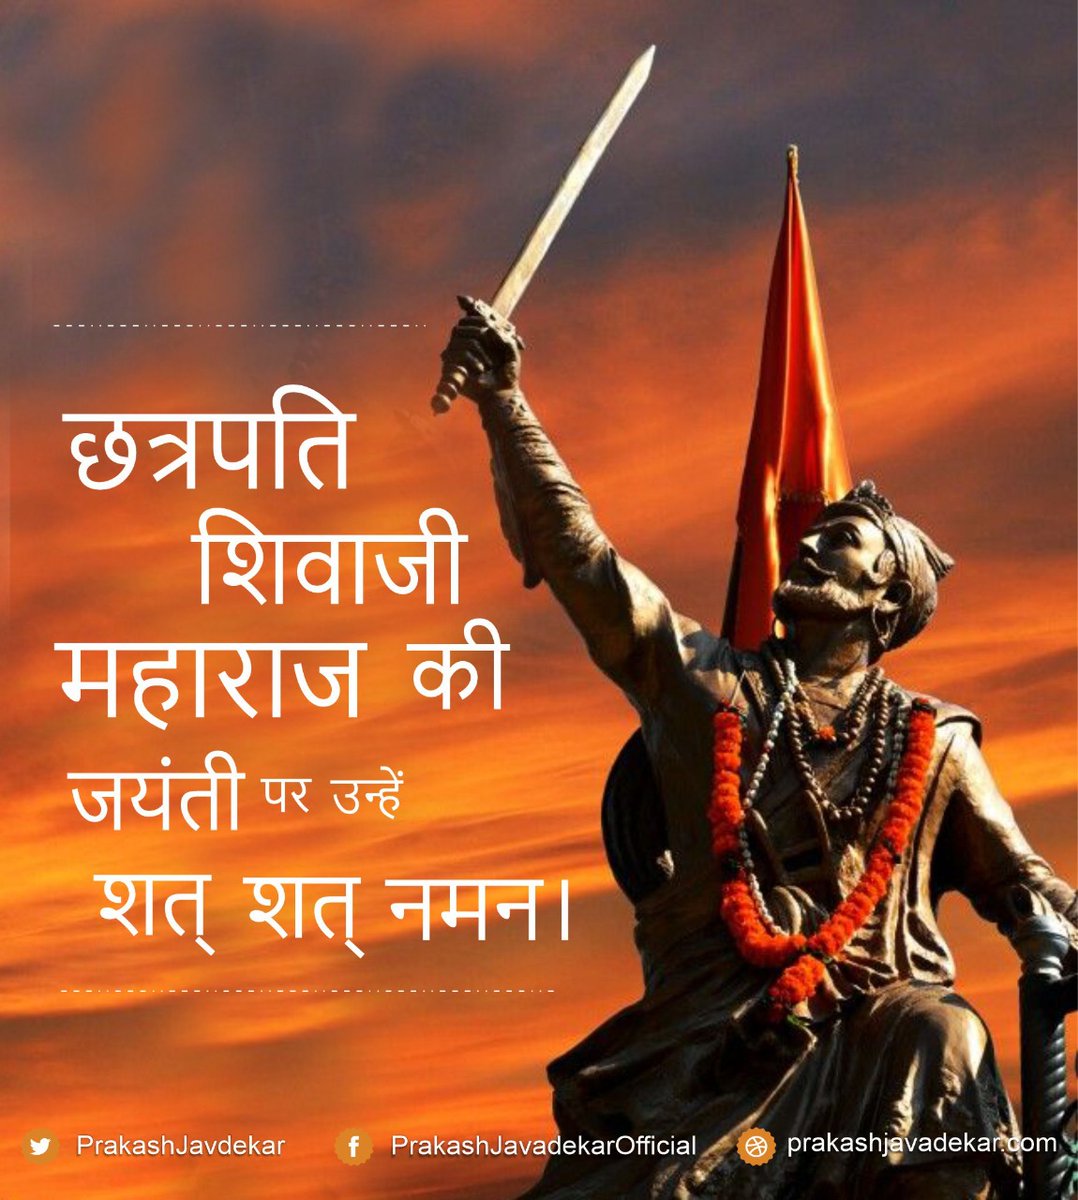 T 3446  - 'छत्रपति शिवाजी महाराज', यह शब्द नहीं, मंत्र है। सदियों बाद भी उनसे प्रेरणा ही मिलती है। वह दुनिया के एक श्रेष्ठ योद्धा और आदर्श राजा थे। उनका स्मरण हमेशा प्रेरणादायी रहा है। 
छत्रपति शिवाजी महाराज जी जयंती शत् शत् नमन।
#ShivajiMaharaj 
#ChhatrapatiShivajiMaharaj